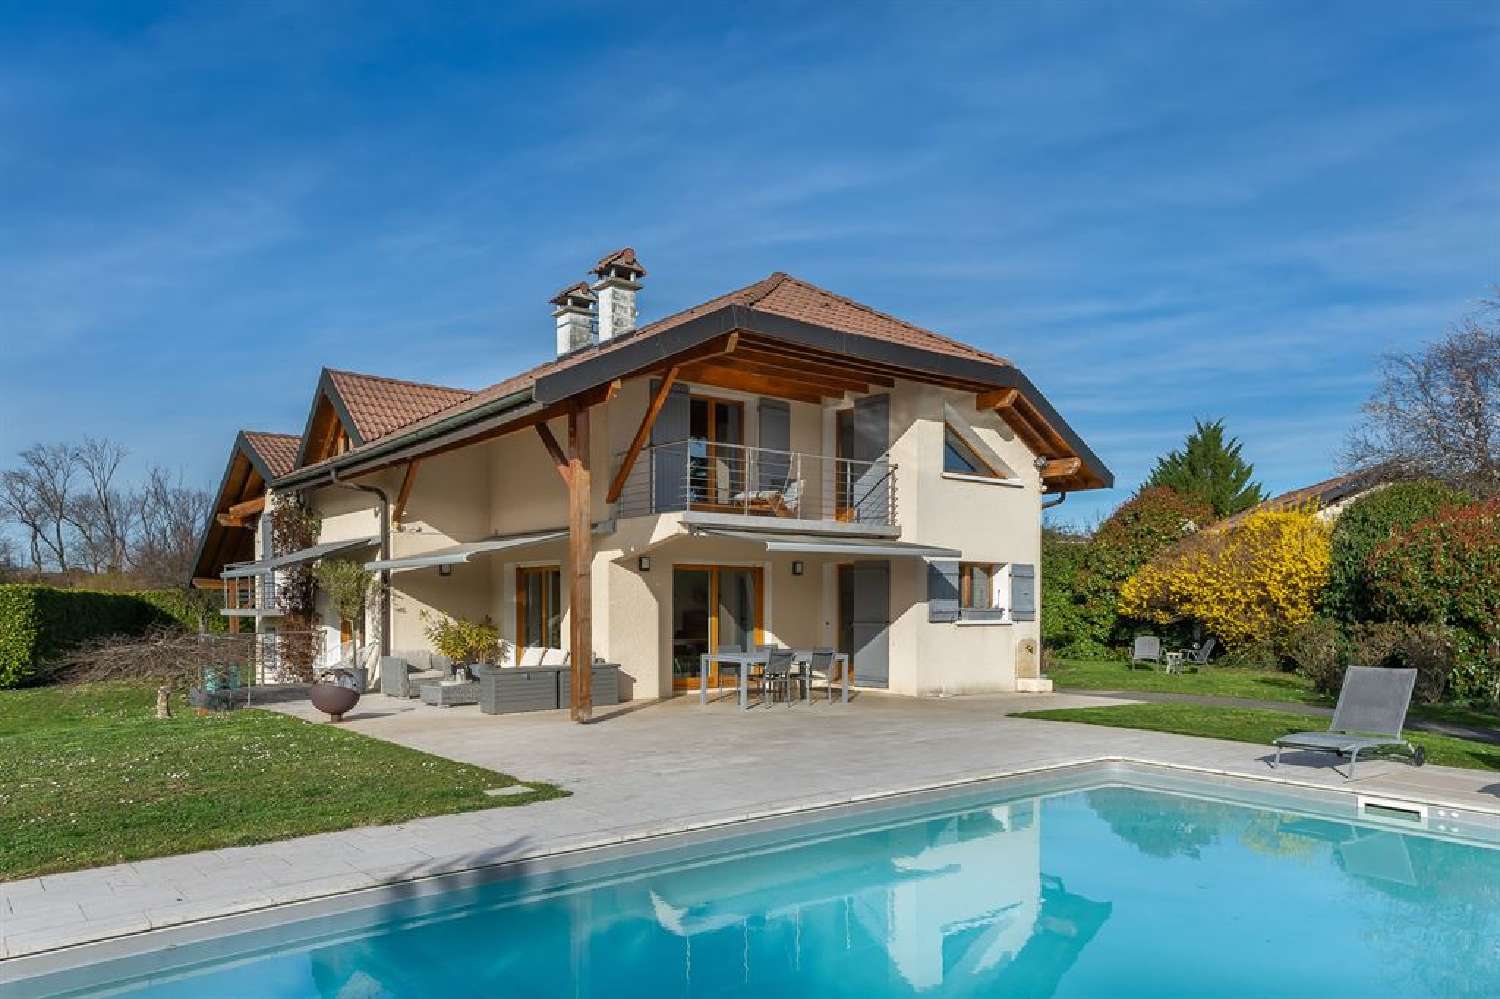  à vendre villa Messery Haute-Savoie 1